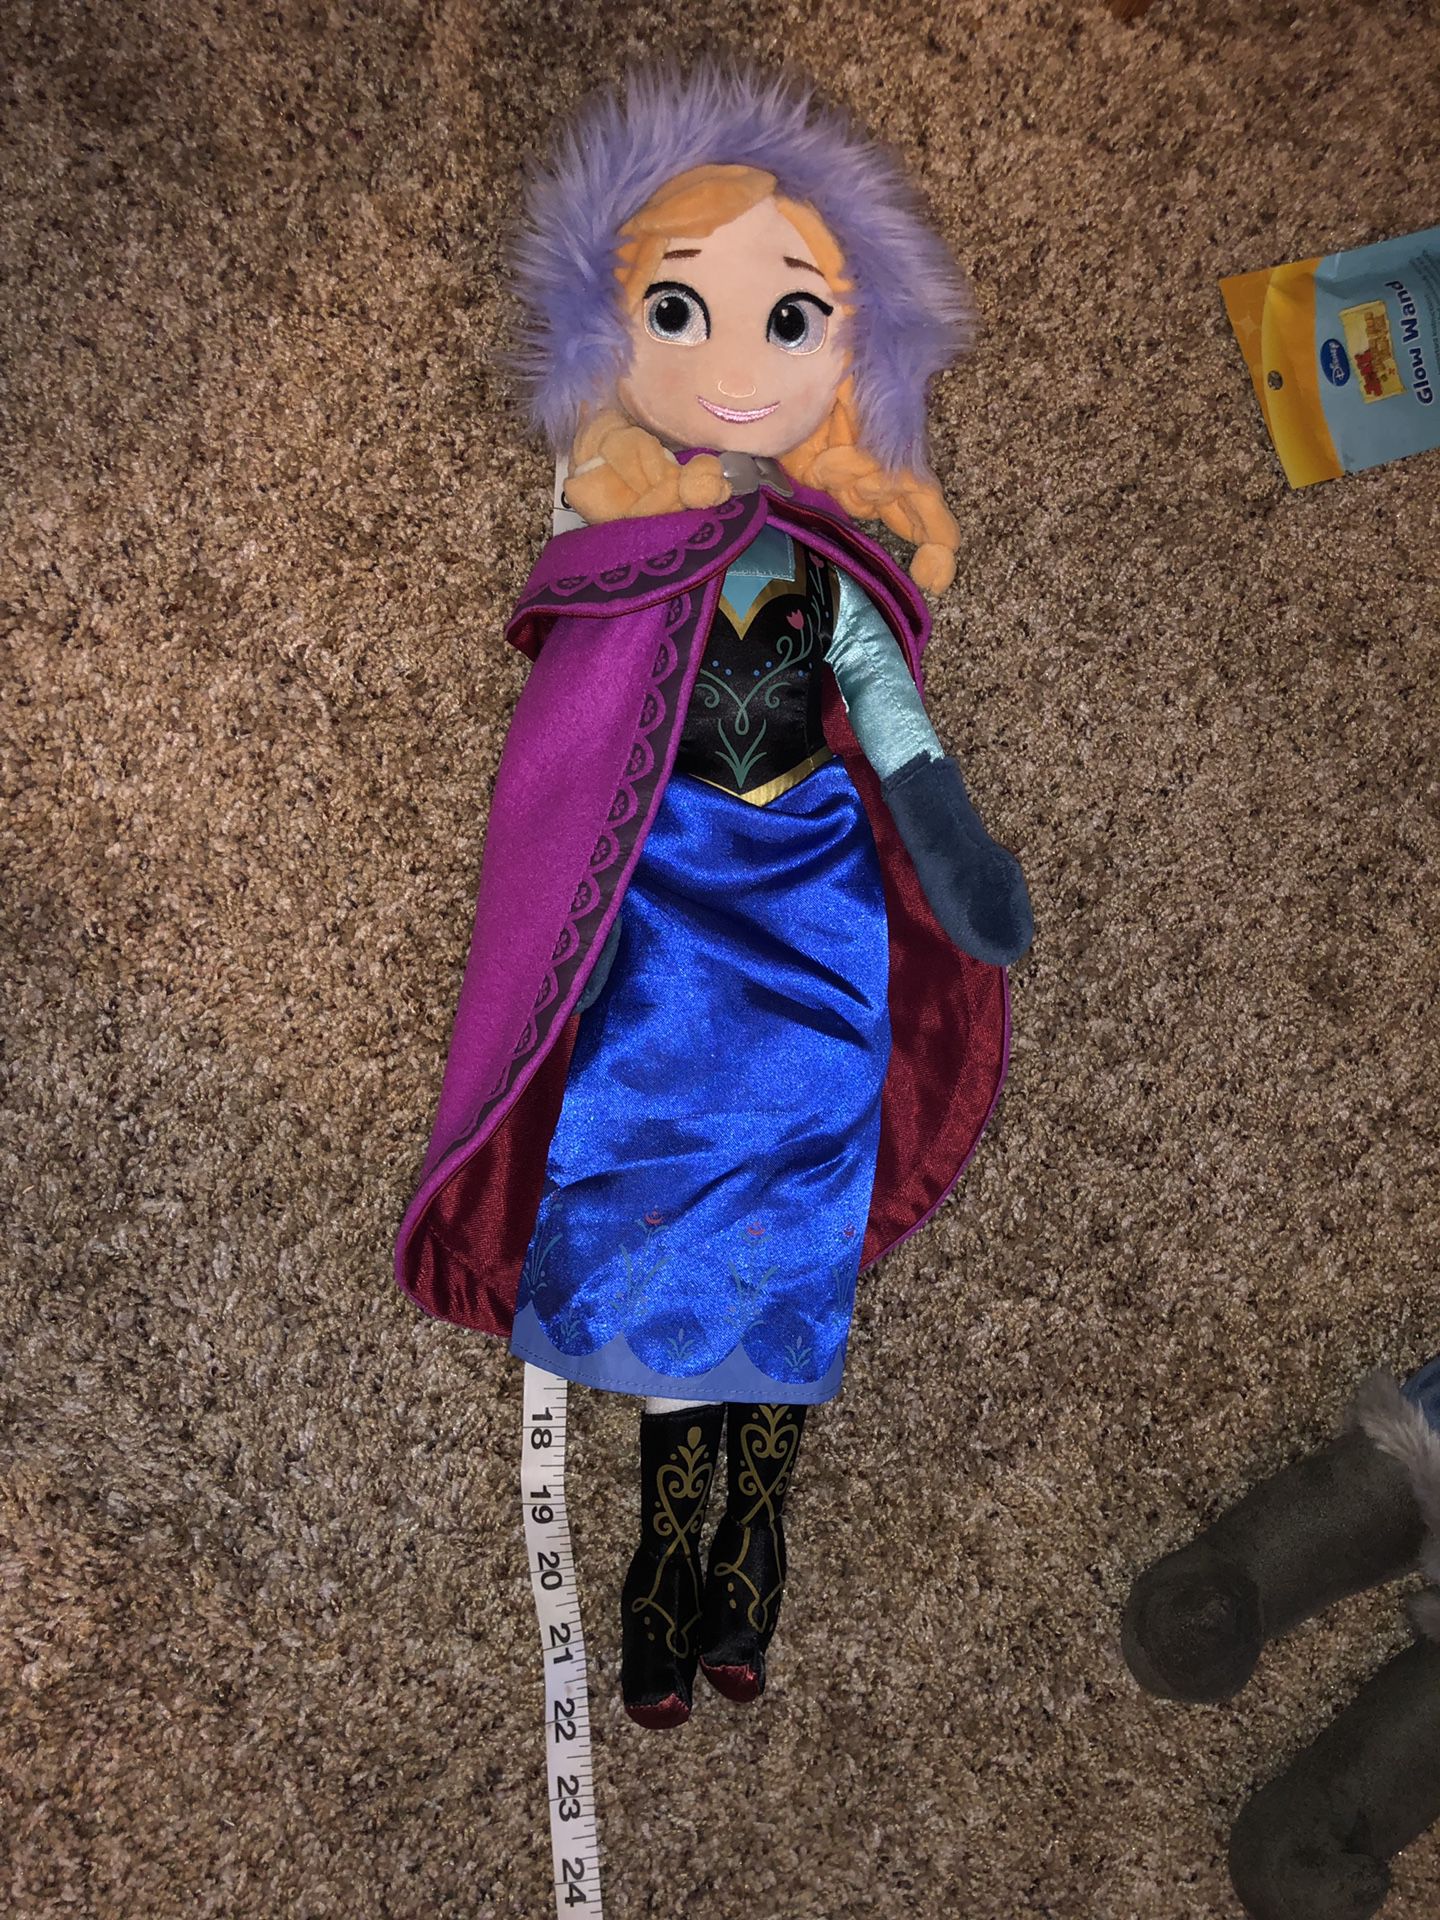 Jumbo Disney Store Anna Frozen plush doll 22” tall!